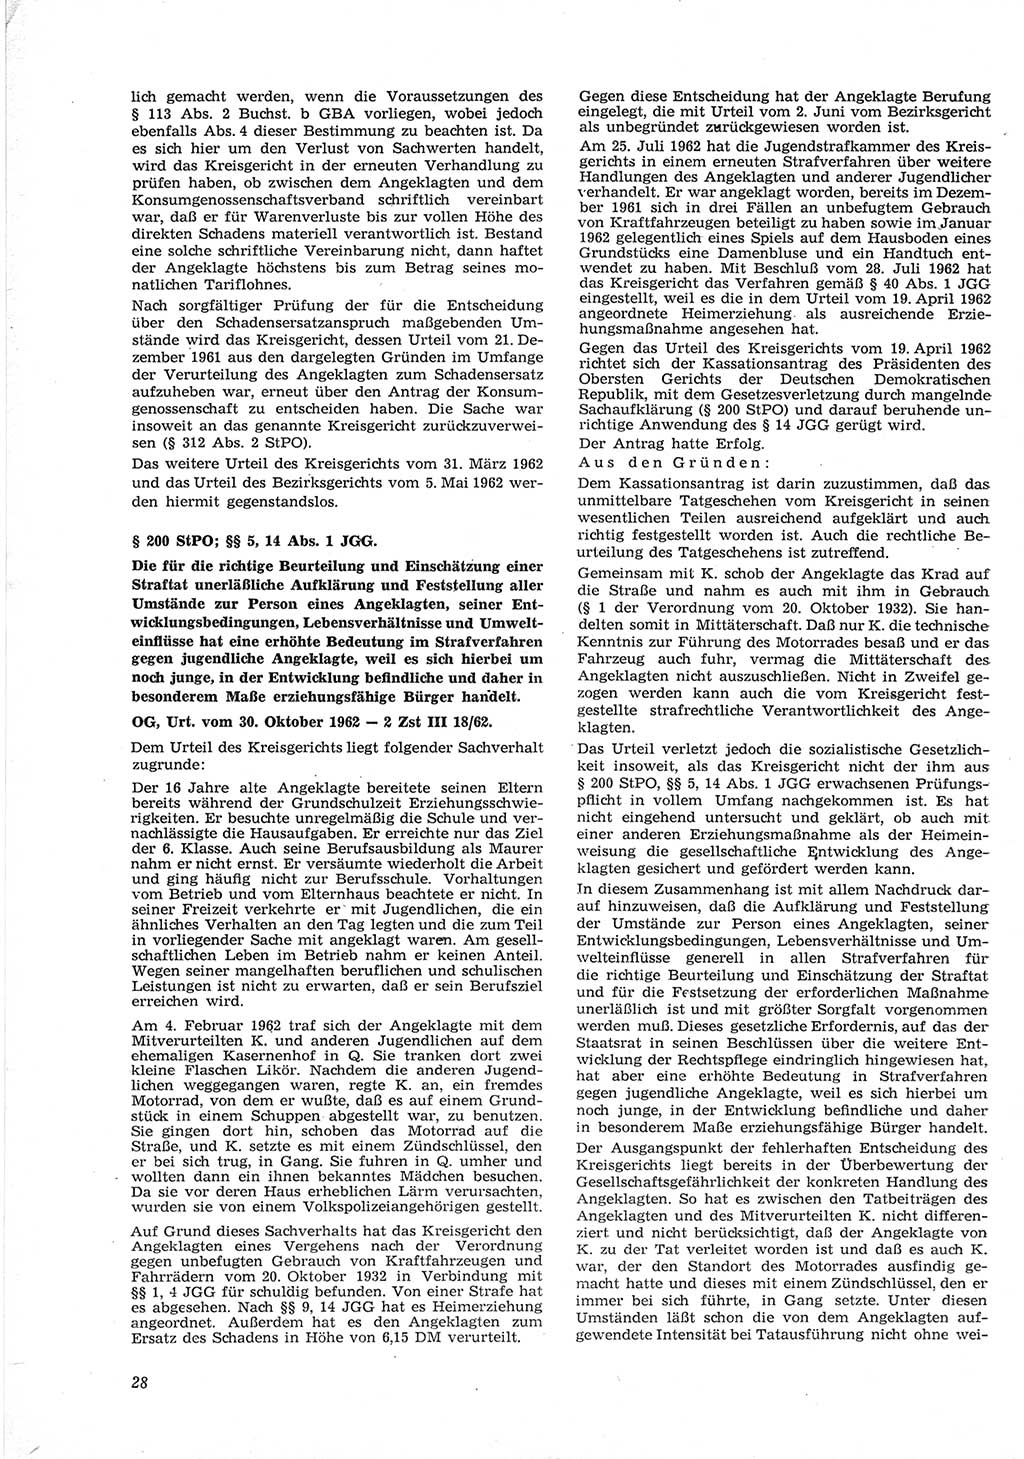 Neue Justiz (NJ), Zeitschrift für Recht und Rechtswissenschaft [Deutsche Demokratische Republik (DDR)], 17. Jahrgang 1963, Seite 28 (NJ DDR 1963, S. 28)